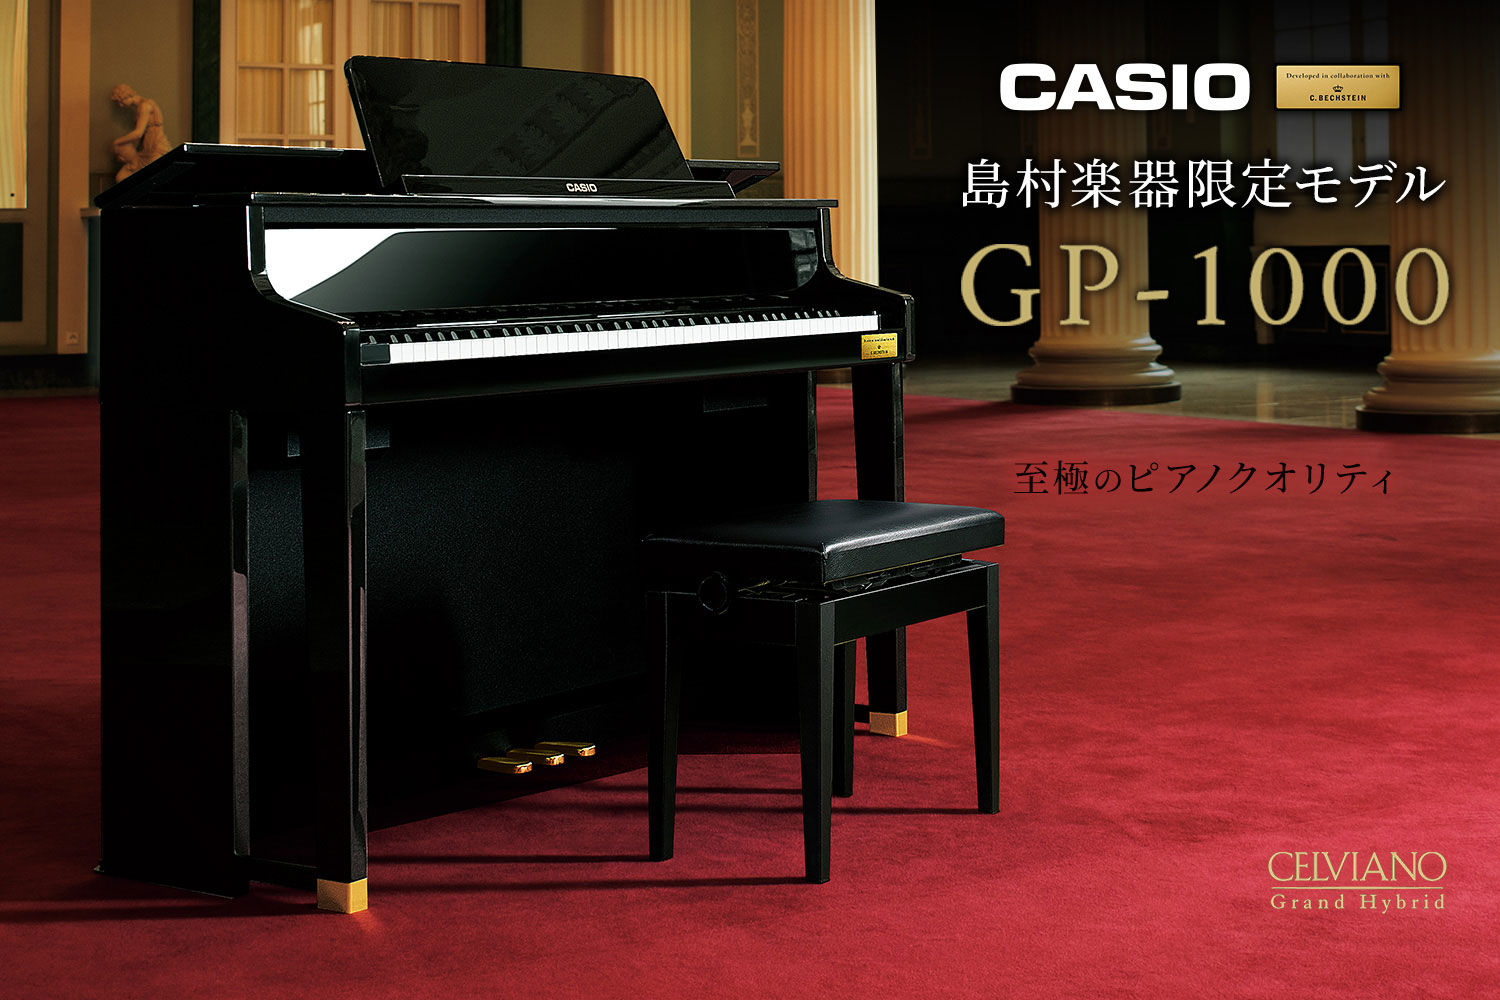 【店頭でお試し頂けます♪】CASIO×C.ベヒシュタイン コラボレーション電子ピアノに島村楽器限定モデル「GP-1000」が新登場！※10月3日更新